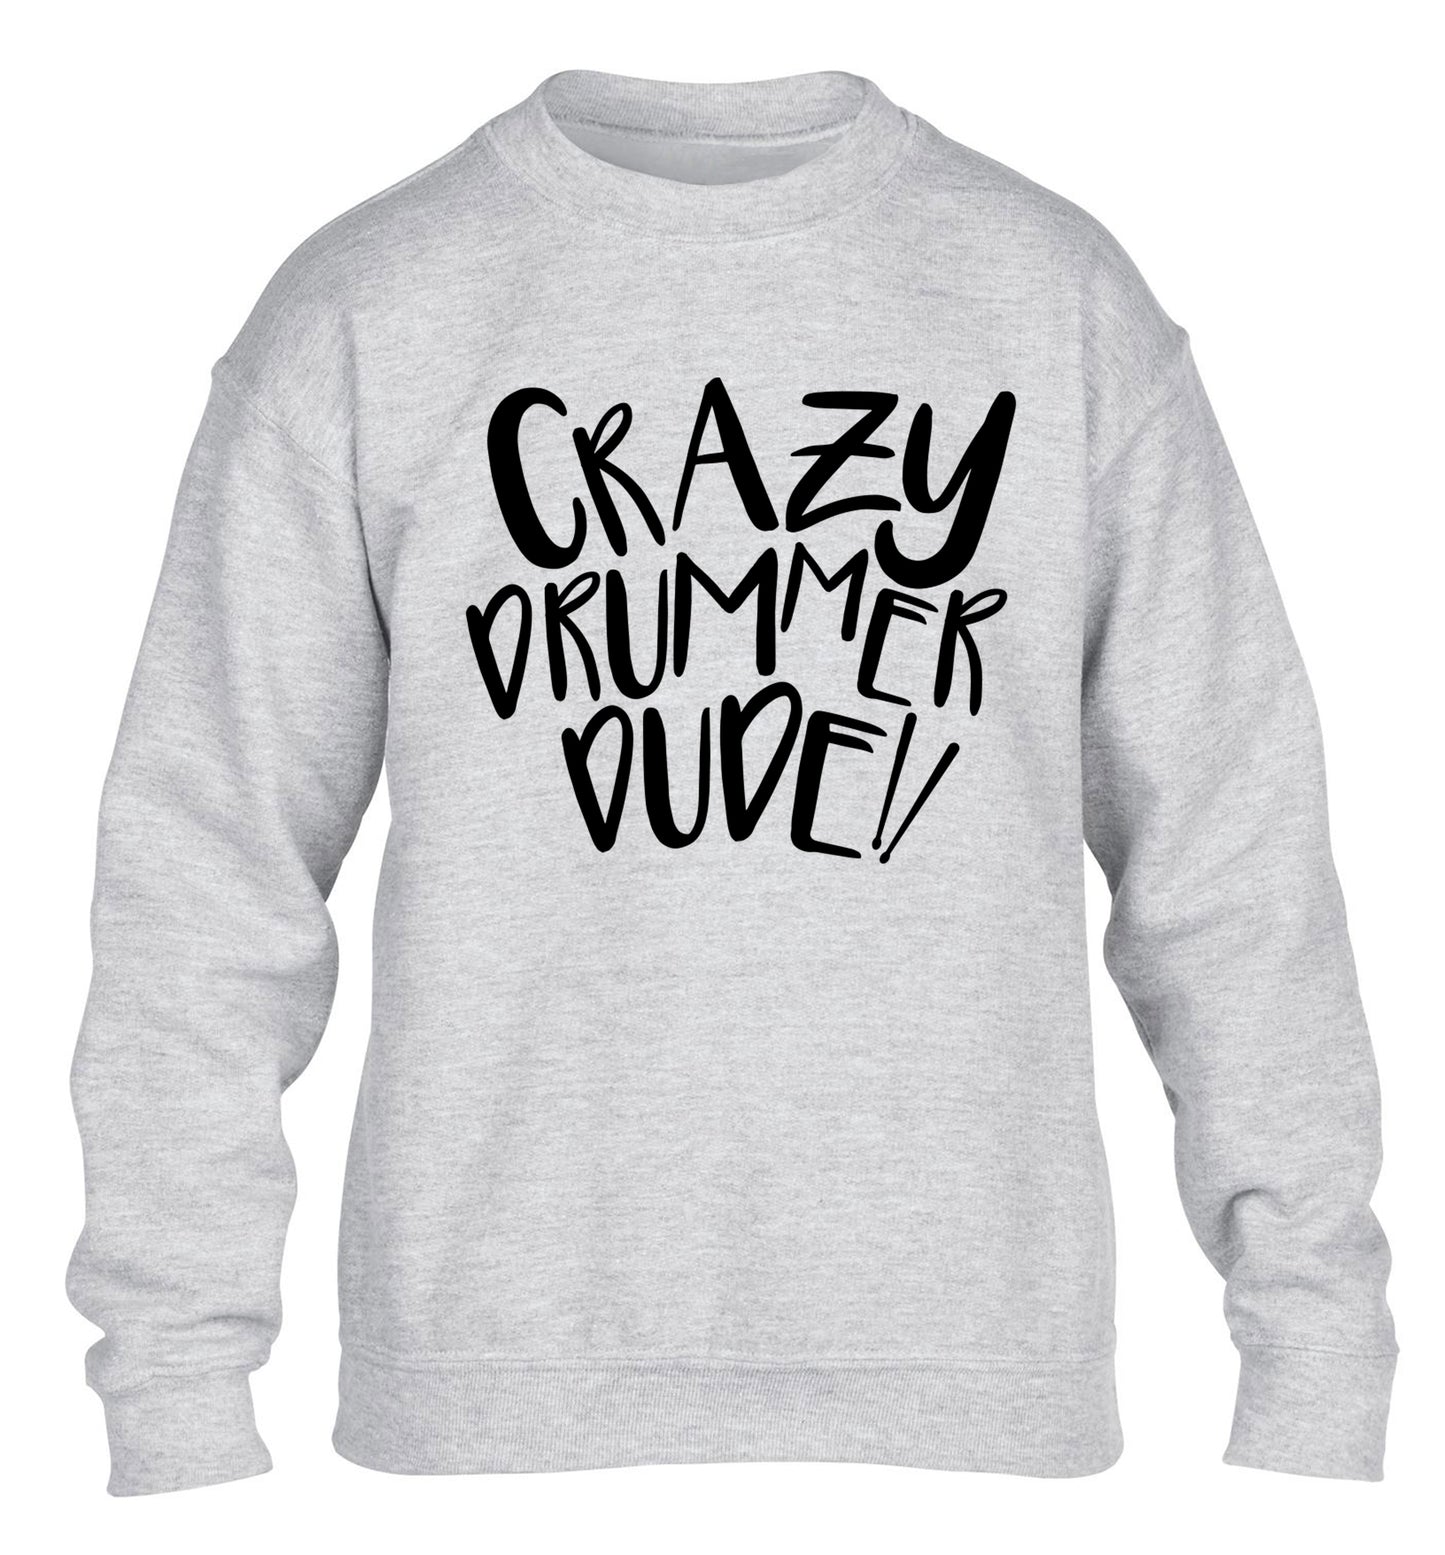 Crazy drummer dude children's grey sweater 12-14 Years